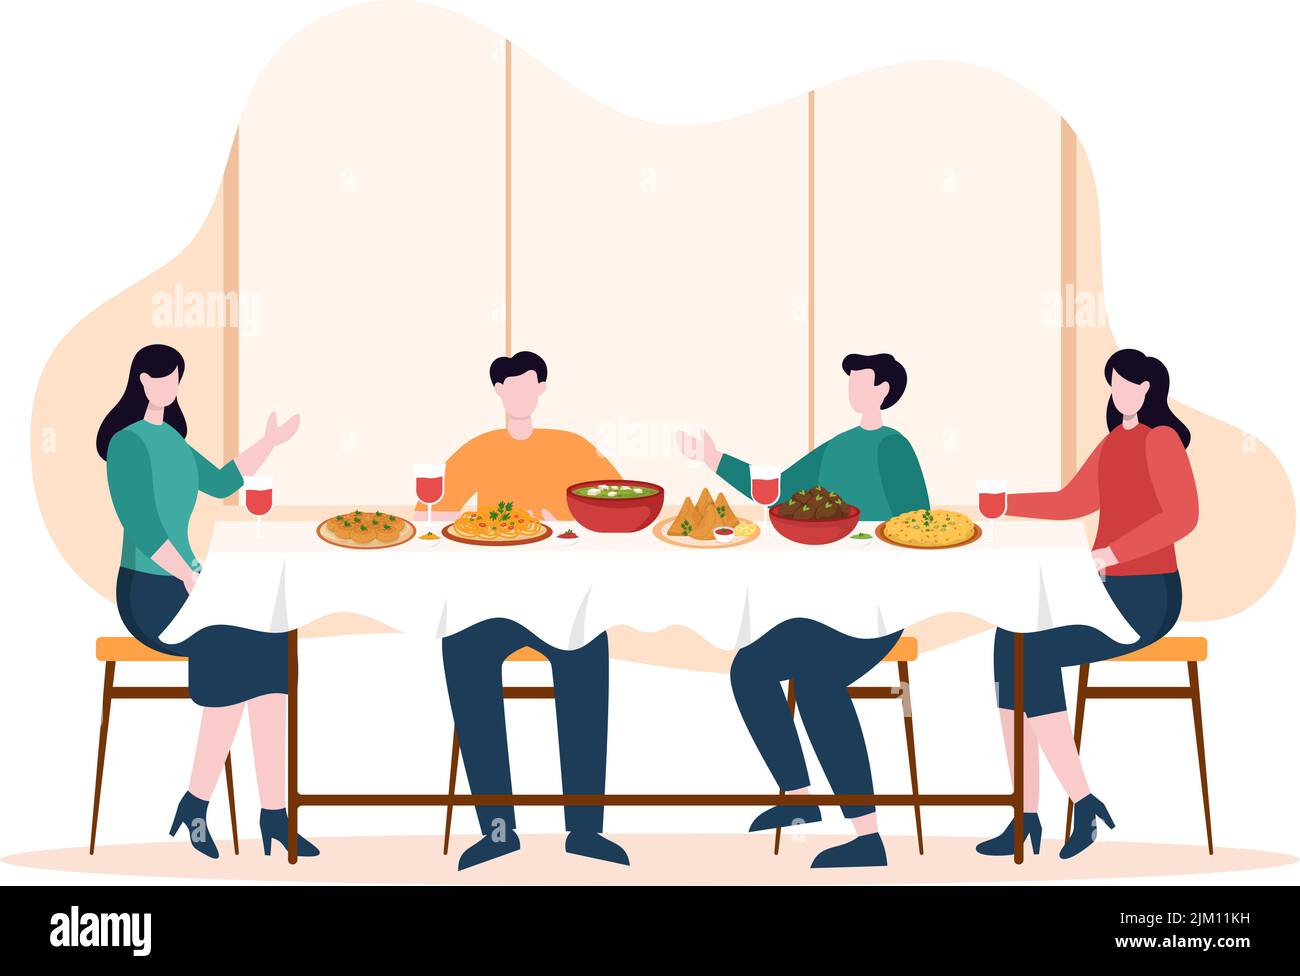 Indische Lebensmittel Cartoon Illustration mit verschiedenen Sammlungen von köstlichen traditionellen Küche und einige Leute essen es in einem Restaurant Stock Vektor